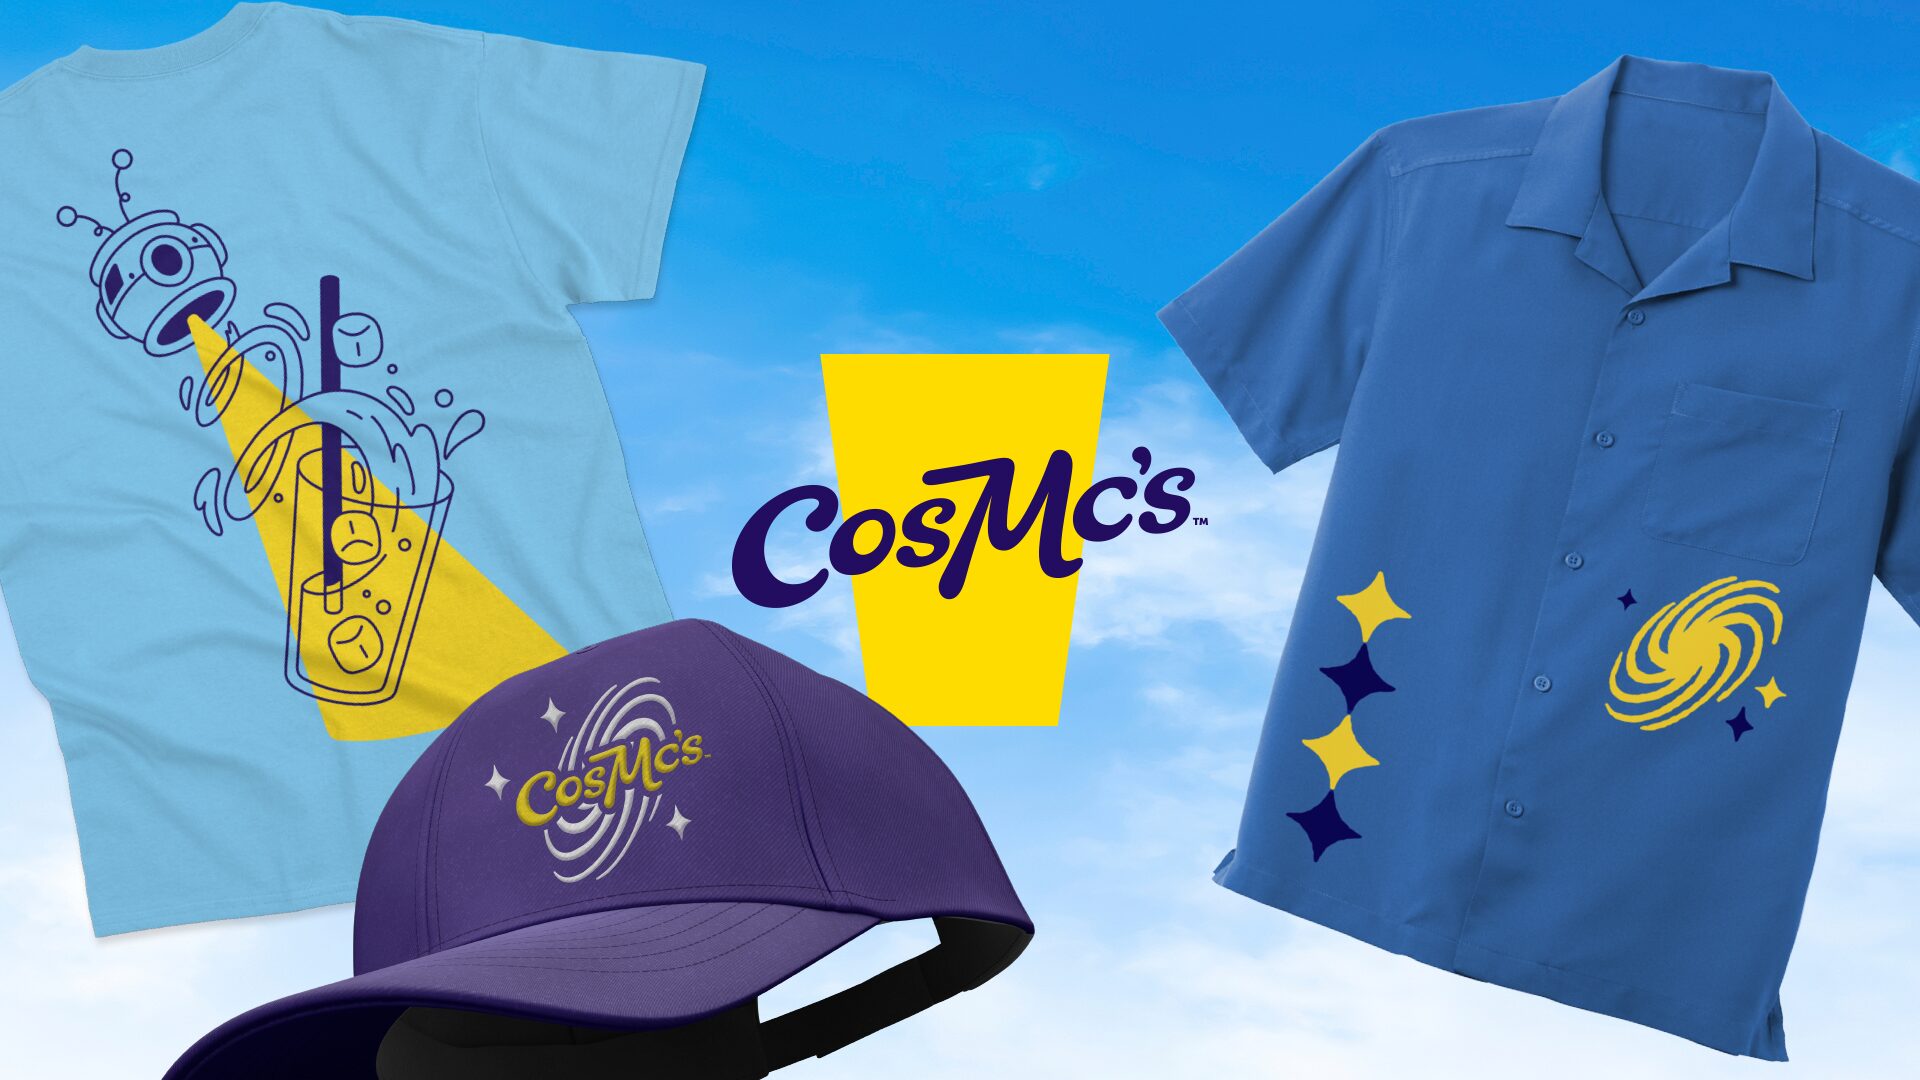 Image des uniformes des équipiers de CosMc’s avec deux chemises et un chapeau avec le logo